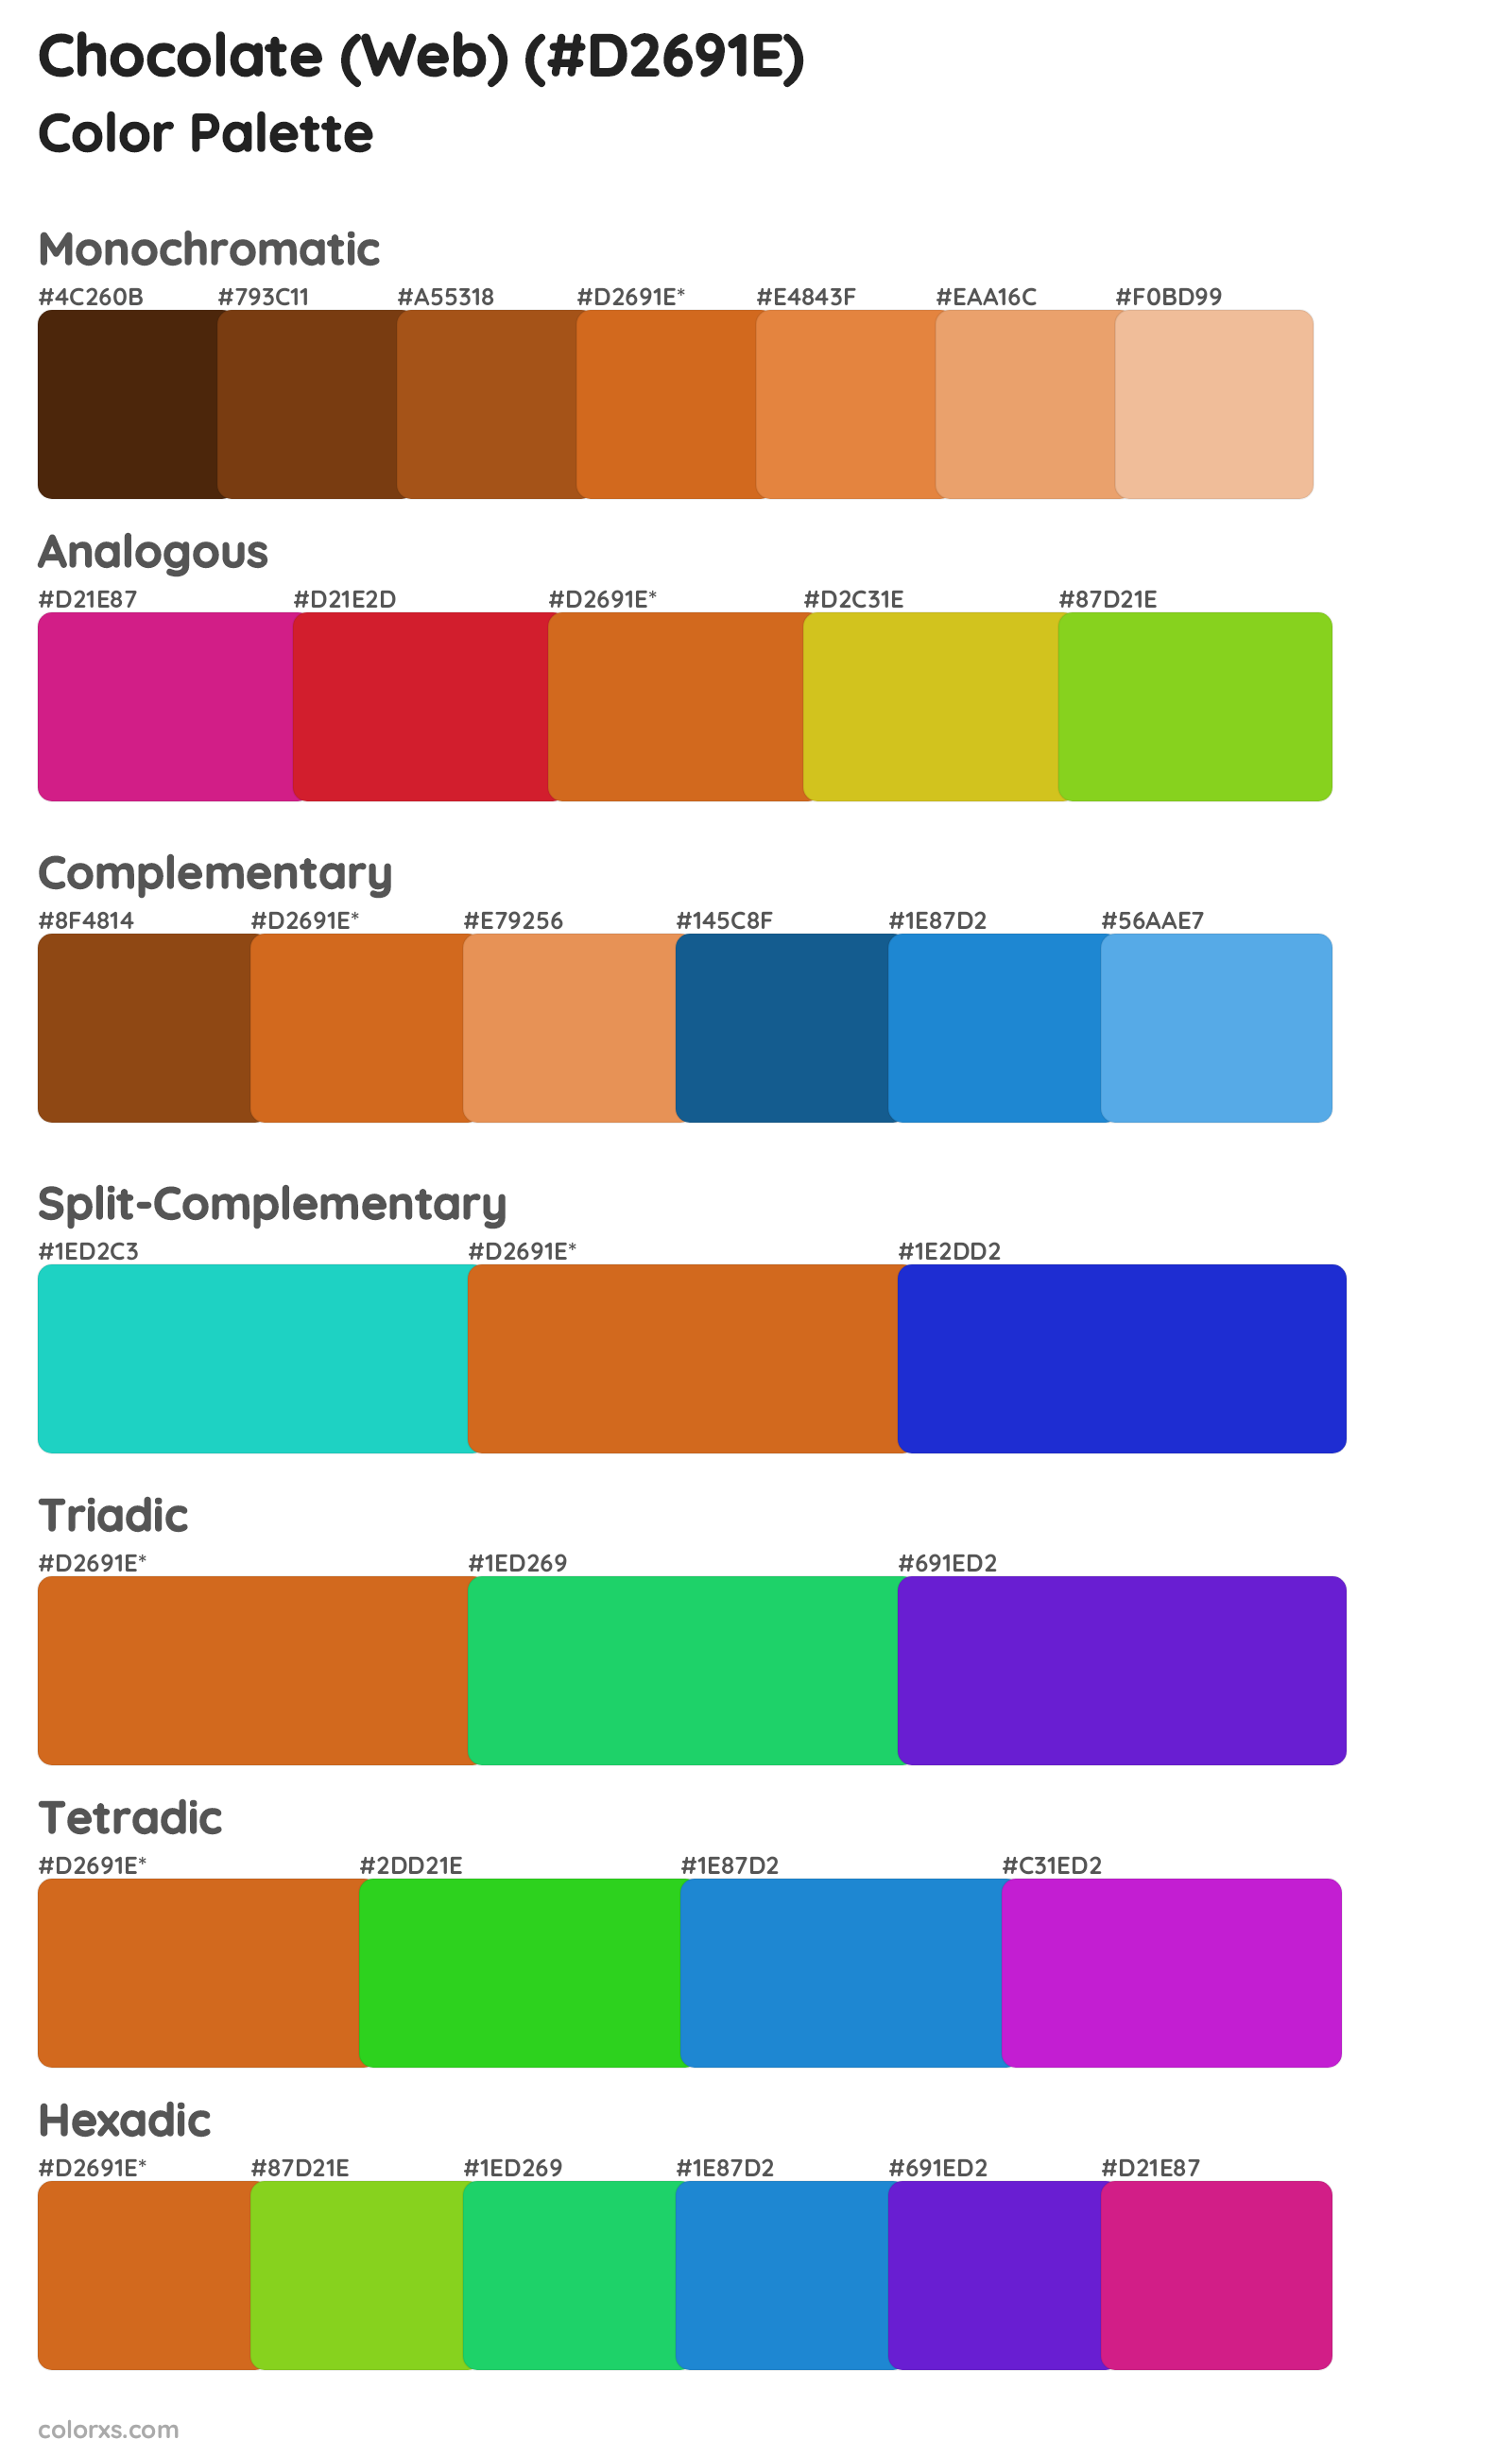 Chocolate (Web) Color Scheme Palettes